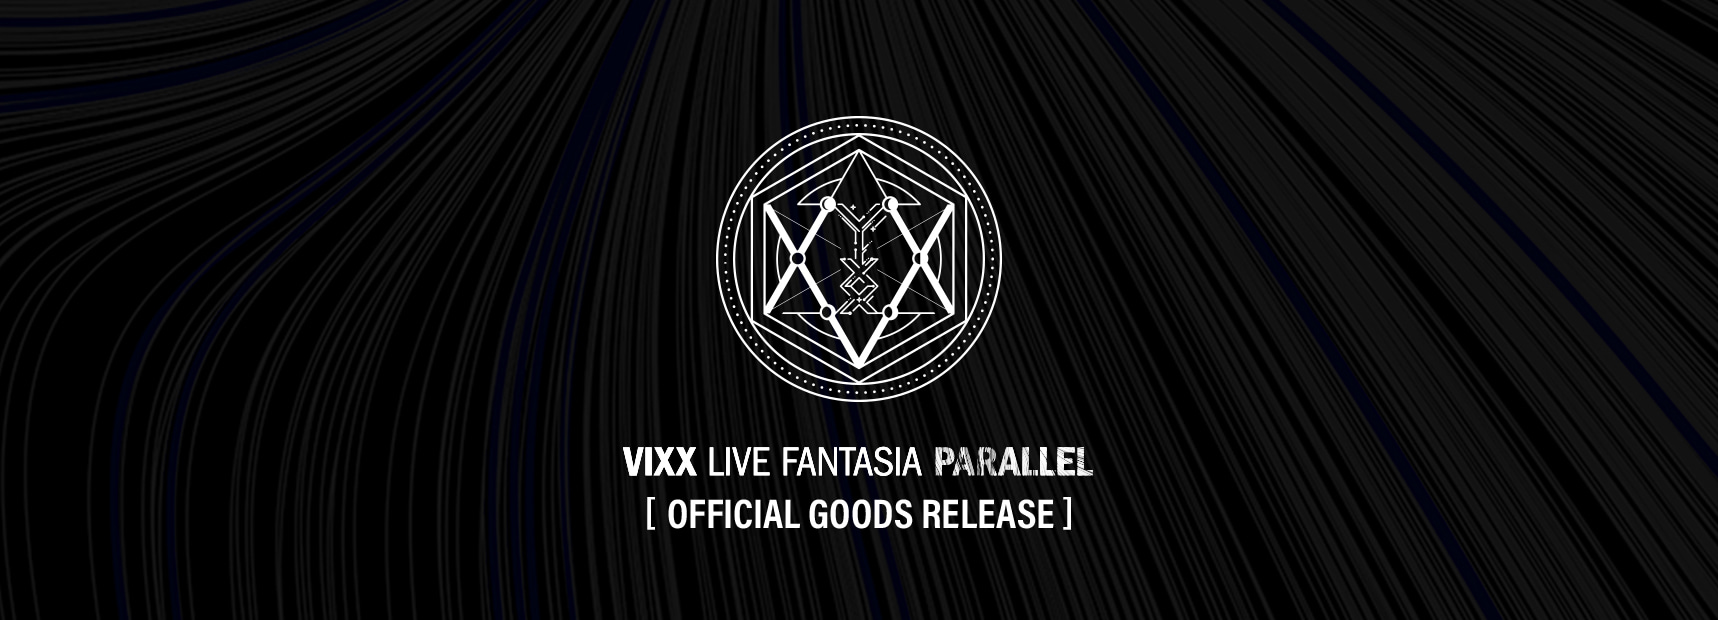 vixx officialgoods